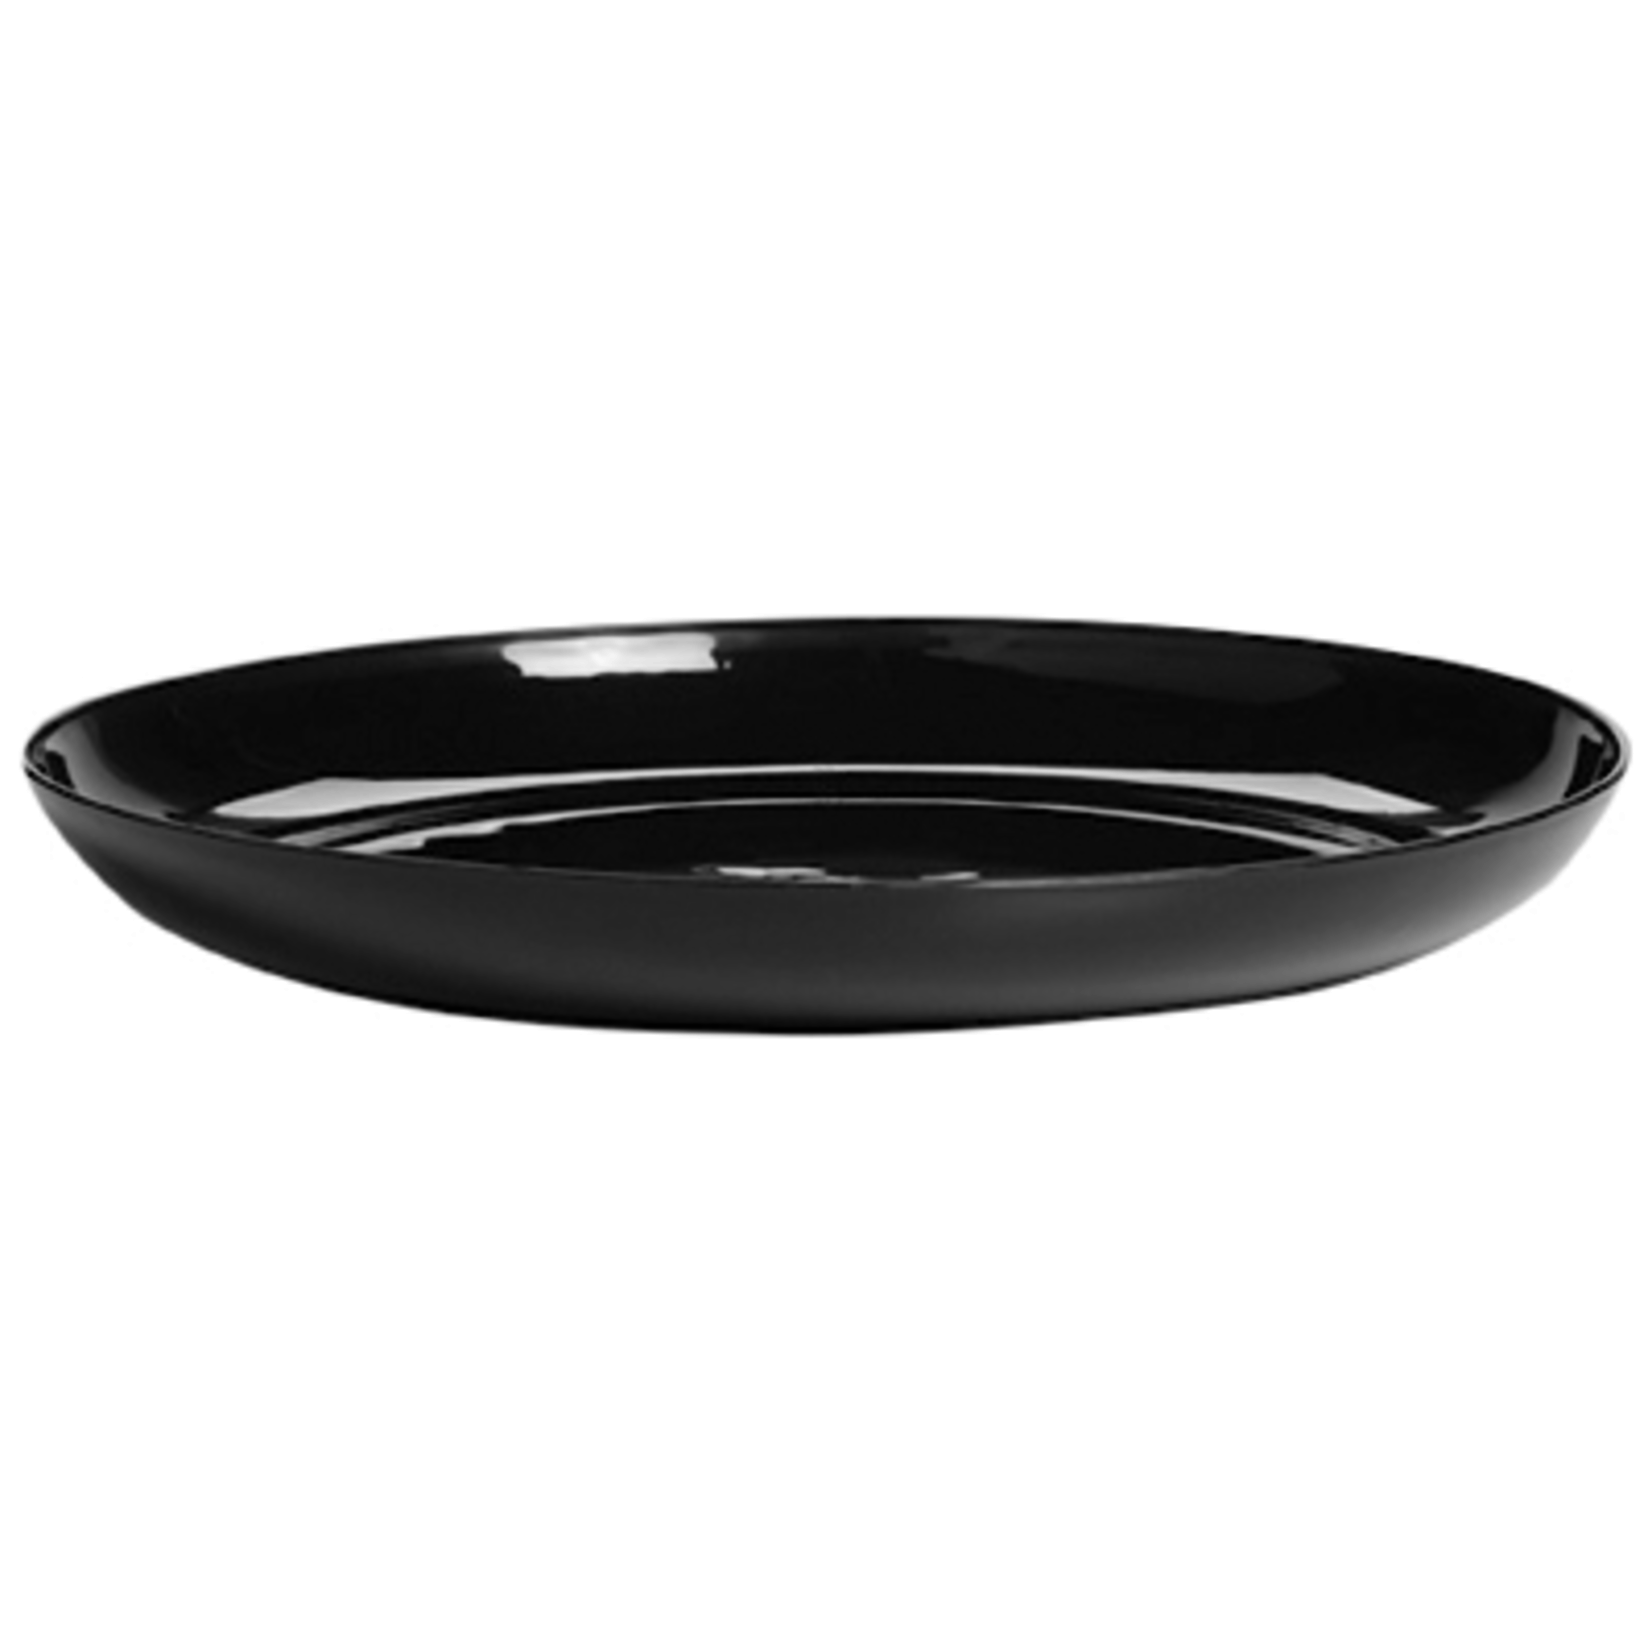 6"" Designer Dish - Black 99996b